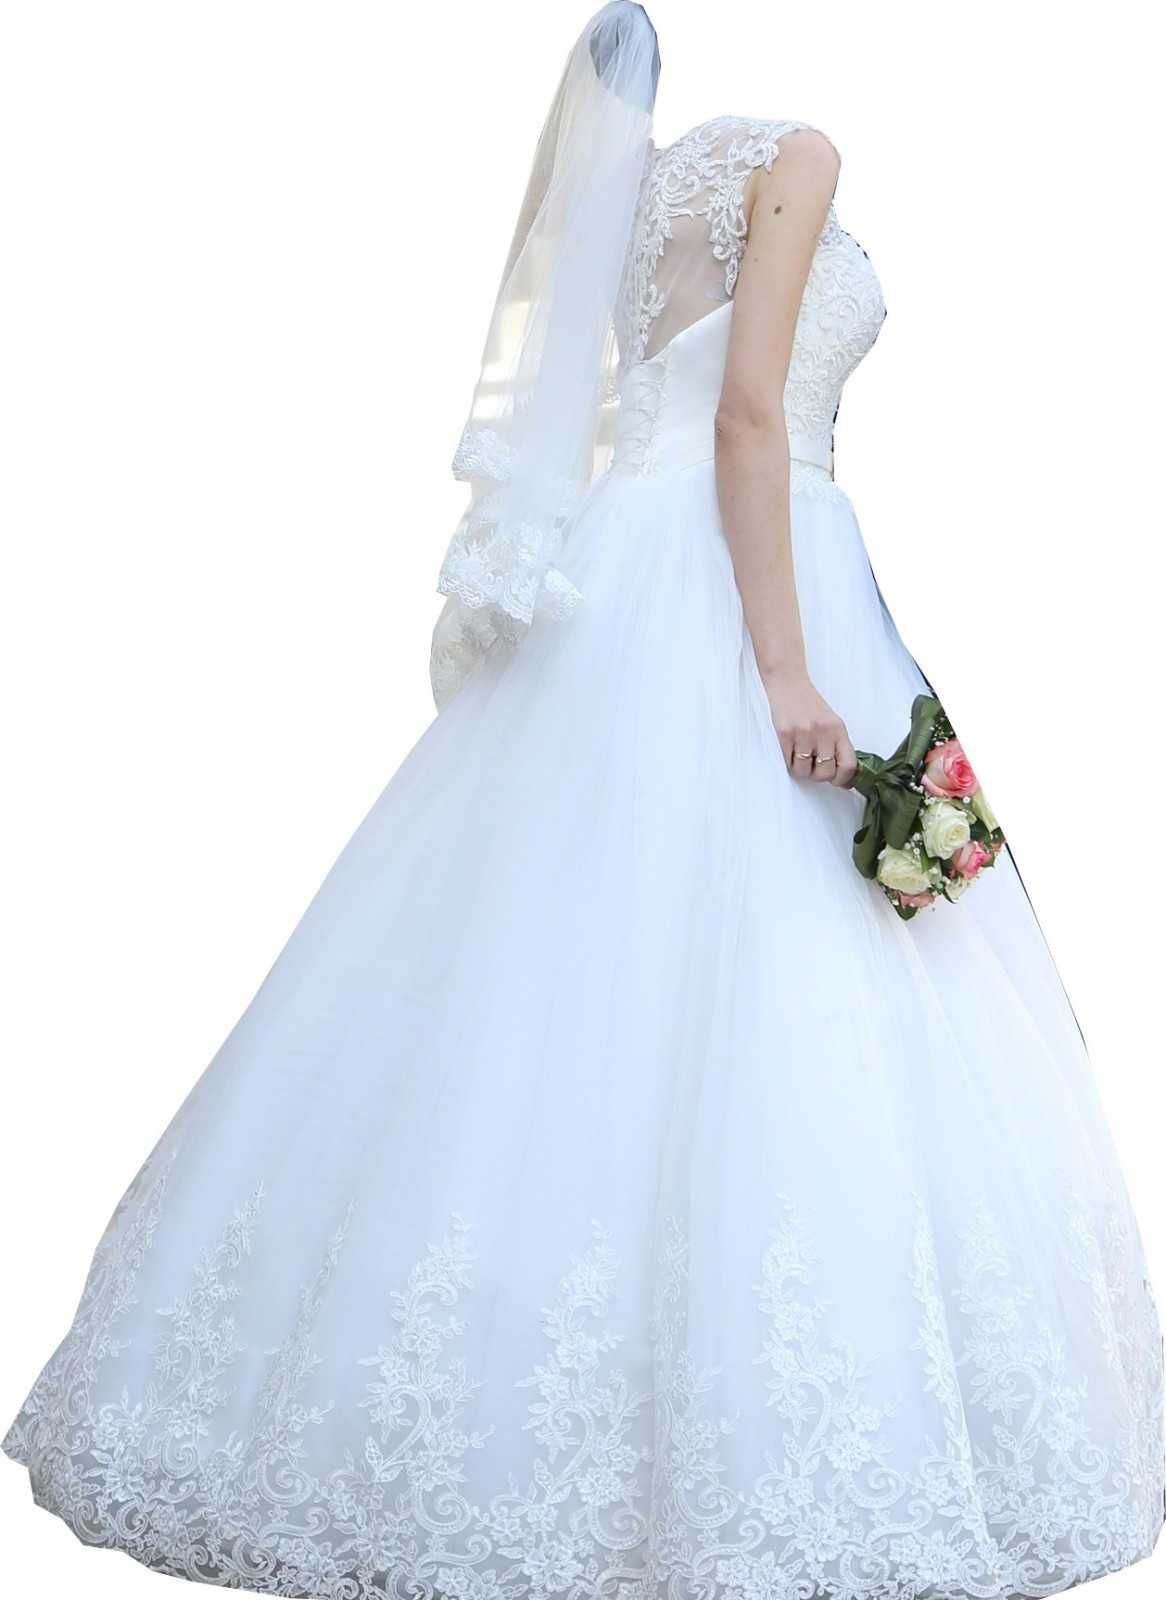 Весільне плаття (сукня)